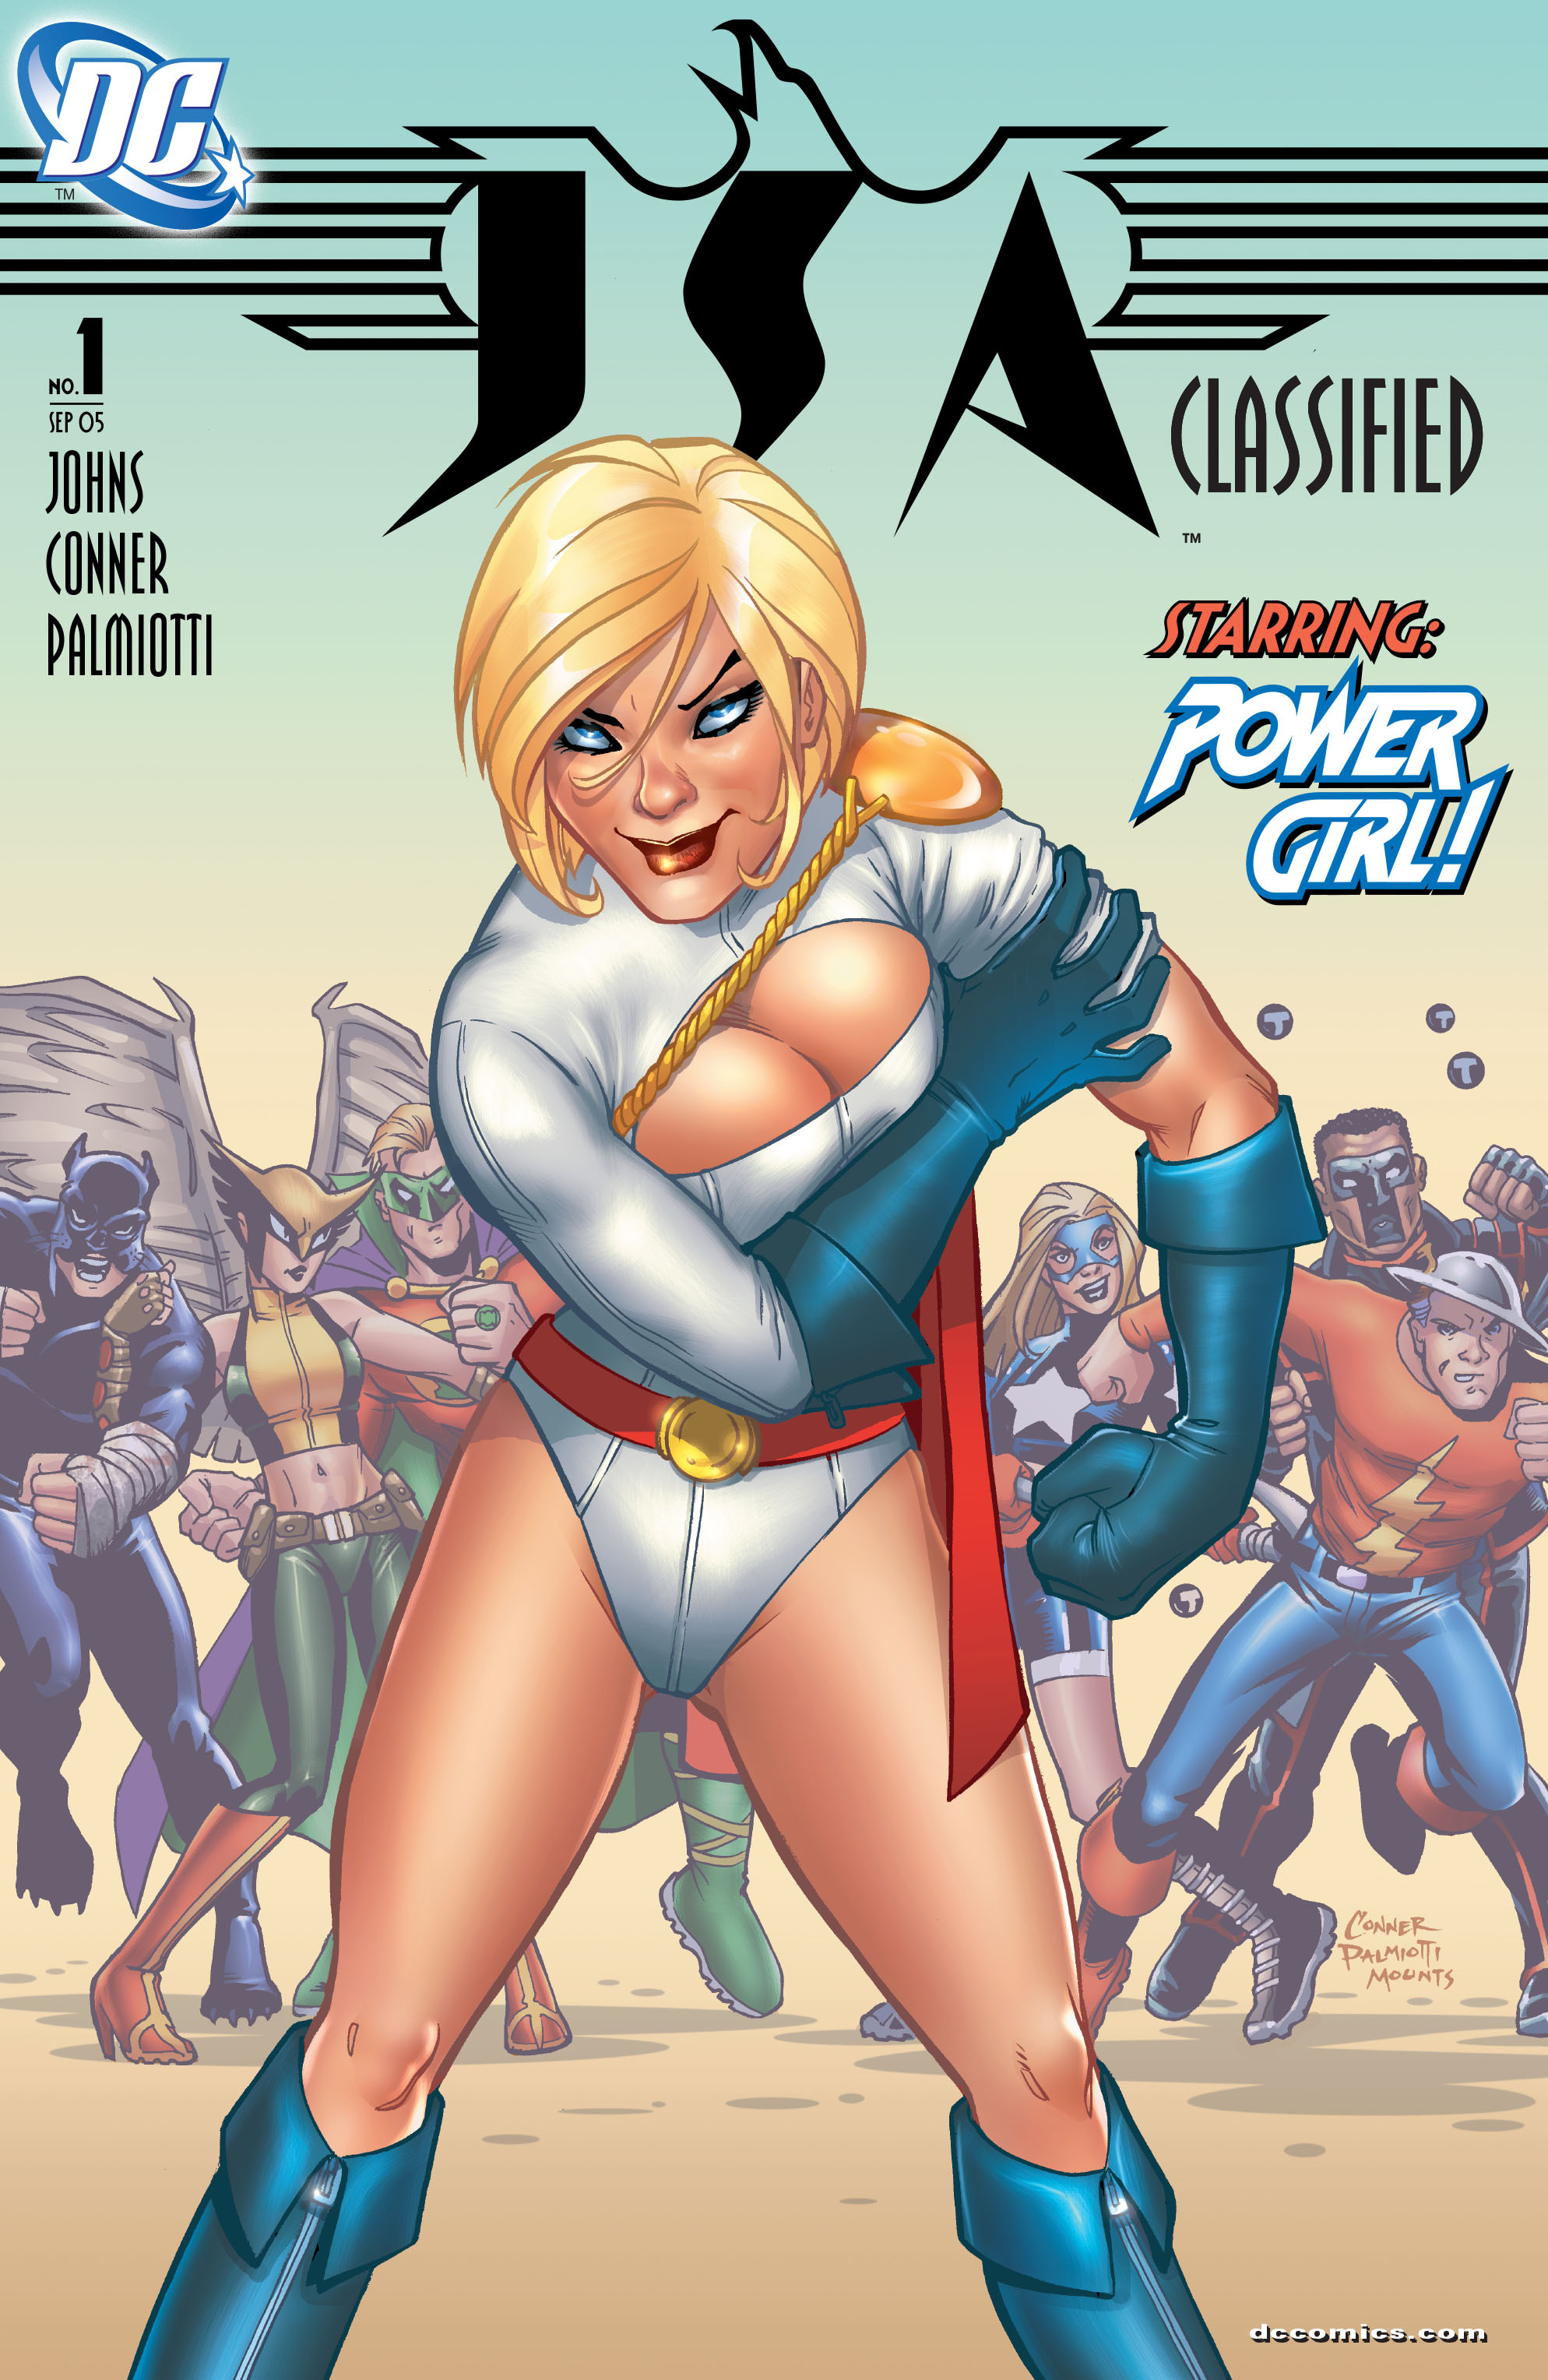 Read online JSA: Classified comic -  Issue #1 - 2